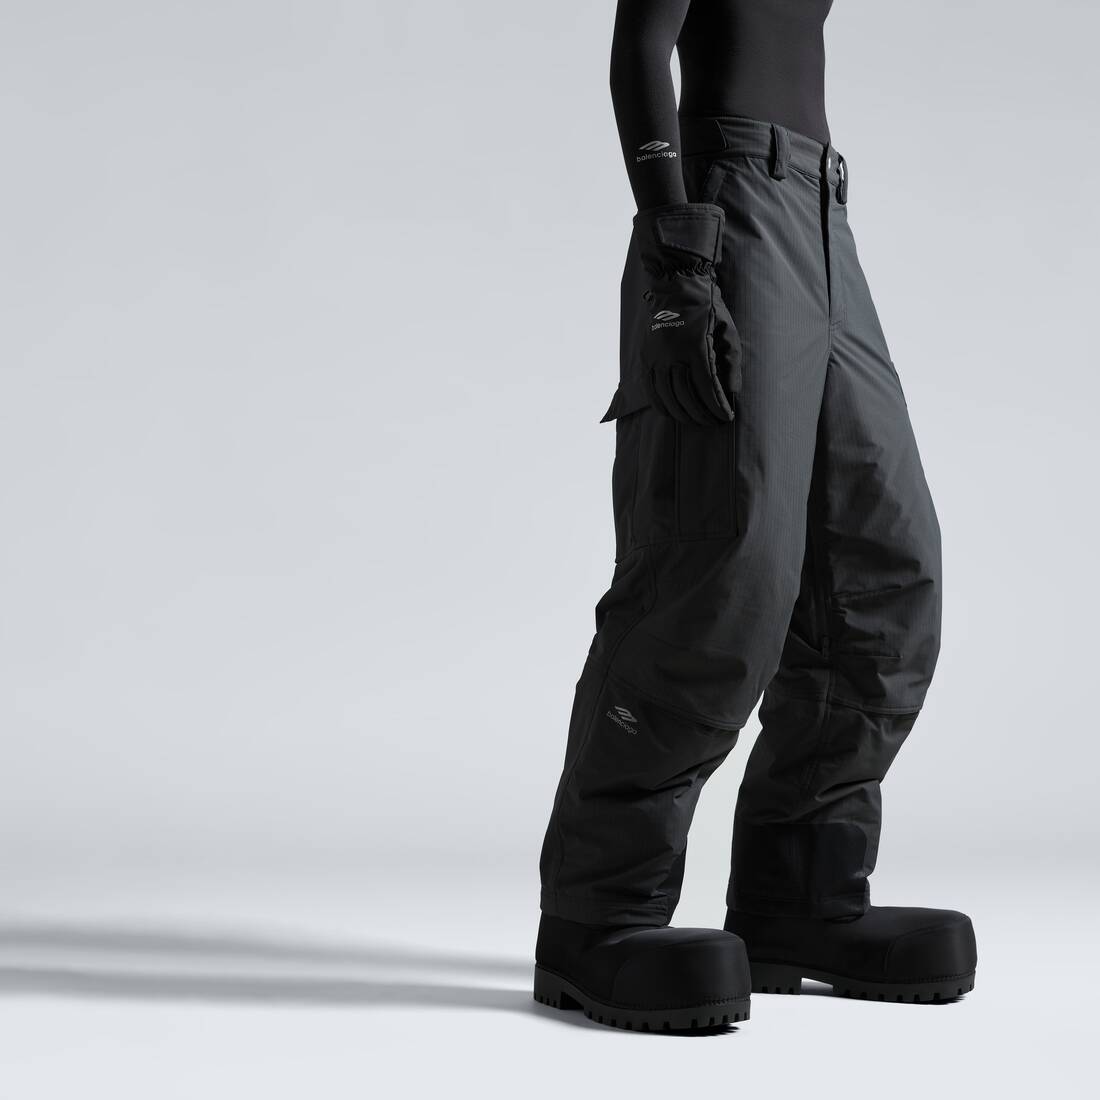 Skiwear - 3b sports icon 5-pocket ski pants